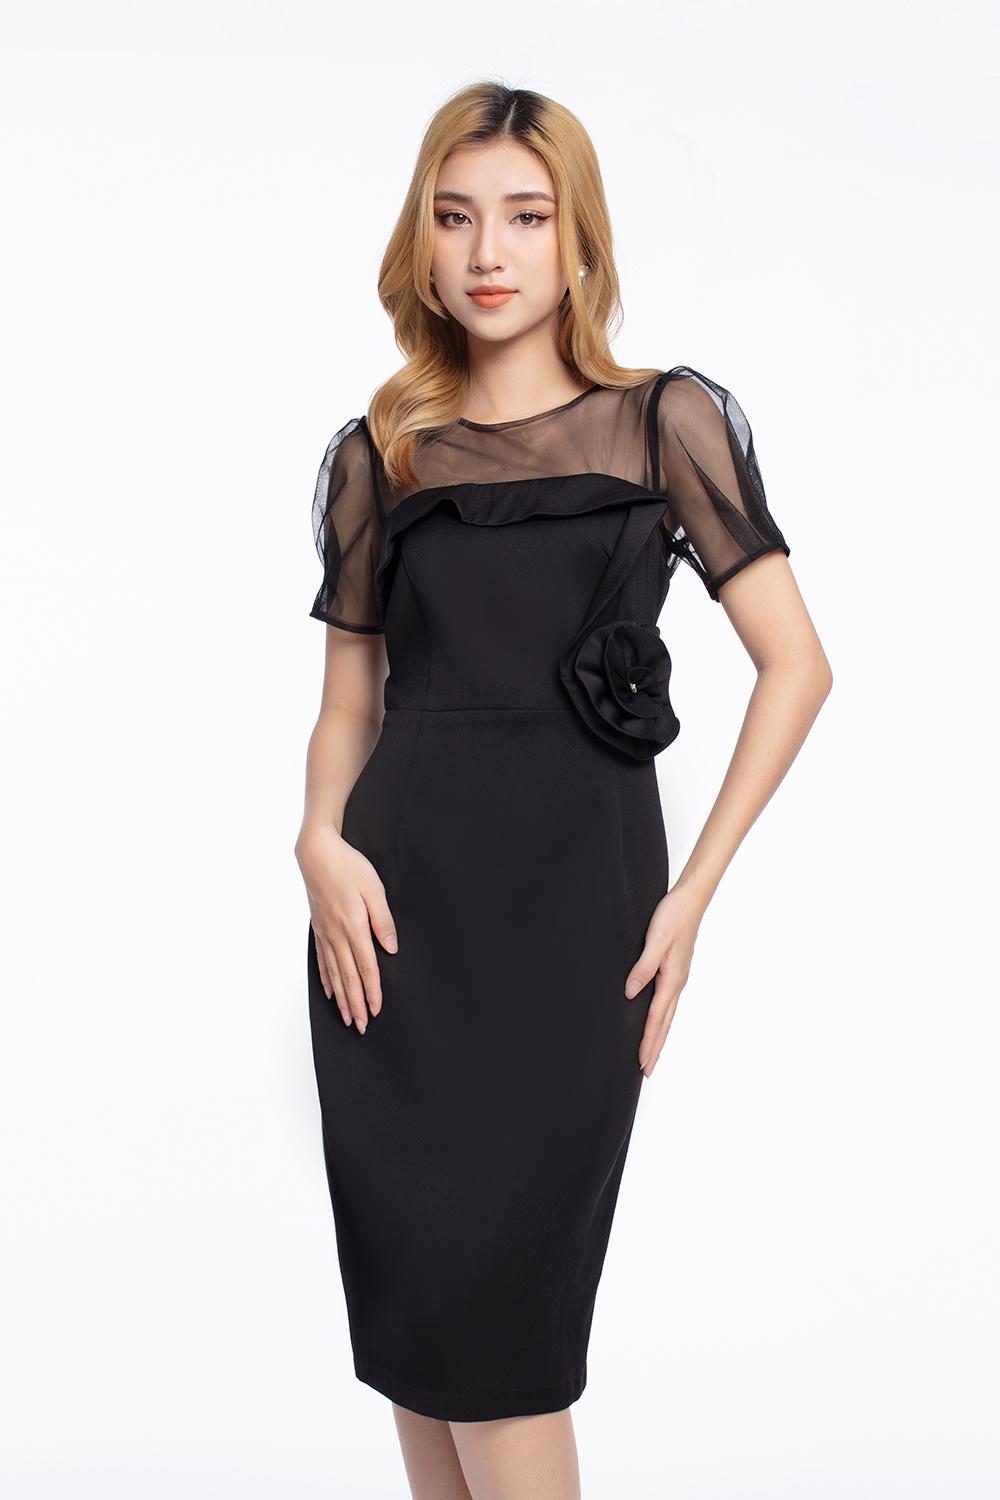 Đầm đen ôm body sexy thiết kế phối lưới tuyệt đẹp - DN413 - AloraShop21